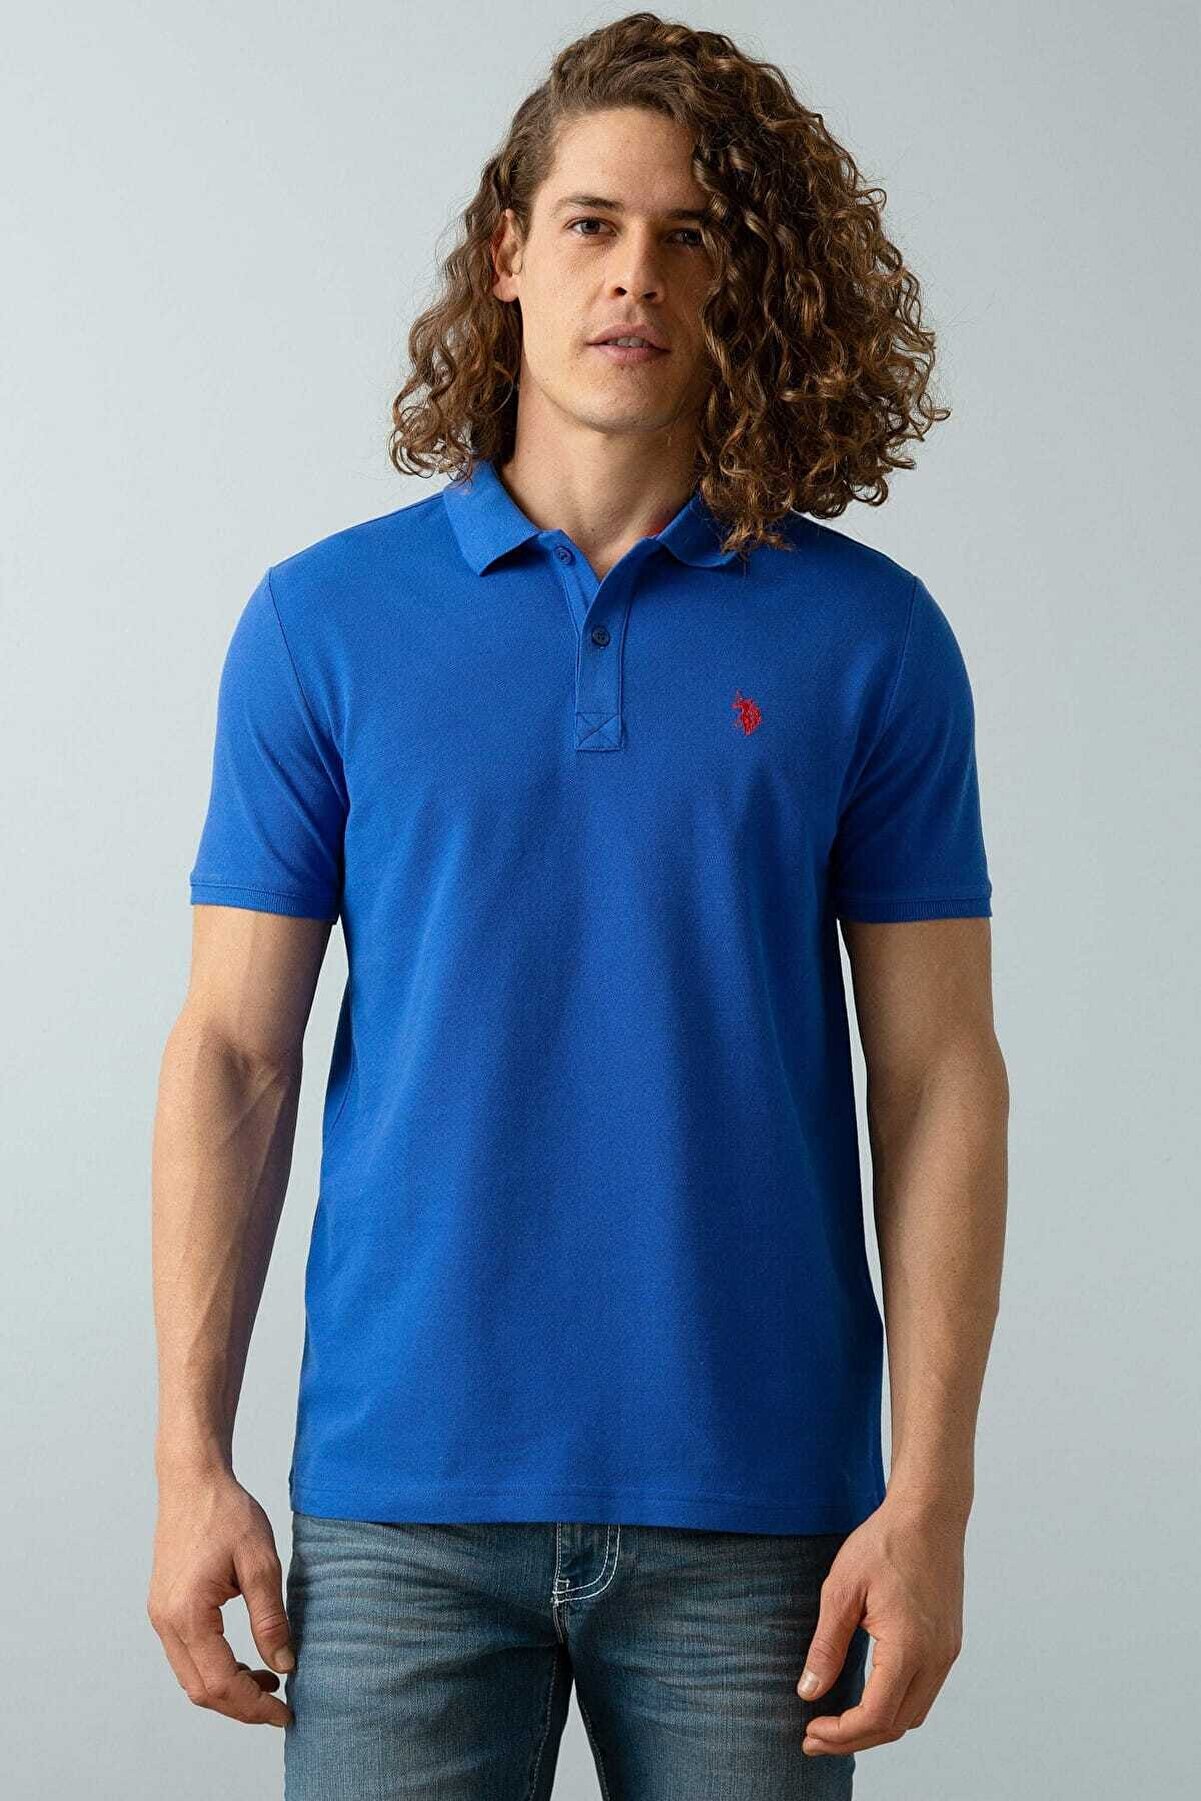 U.S. Polo Assn. Erkek Mavi Polo Yaka T-shirt G081gl011.000.1191429